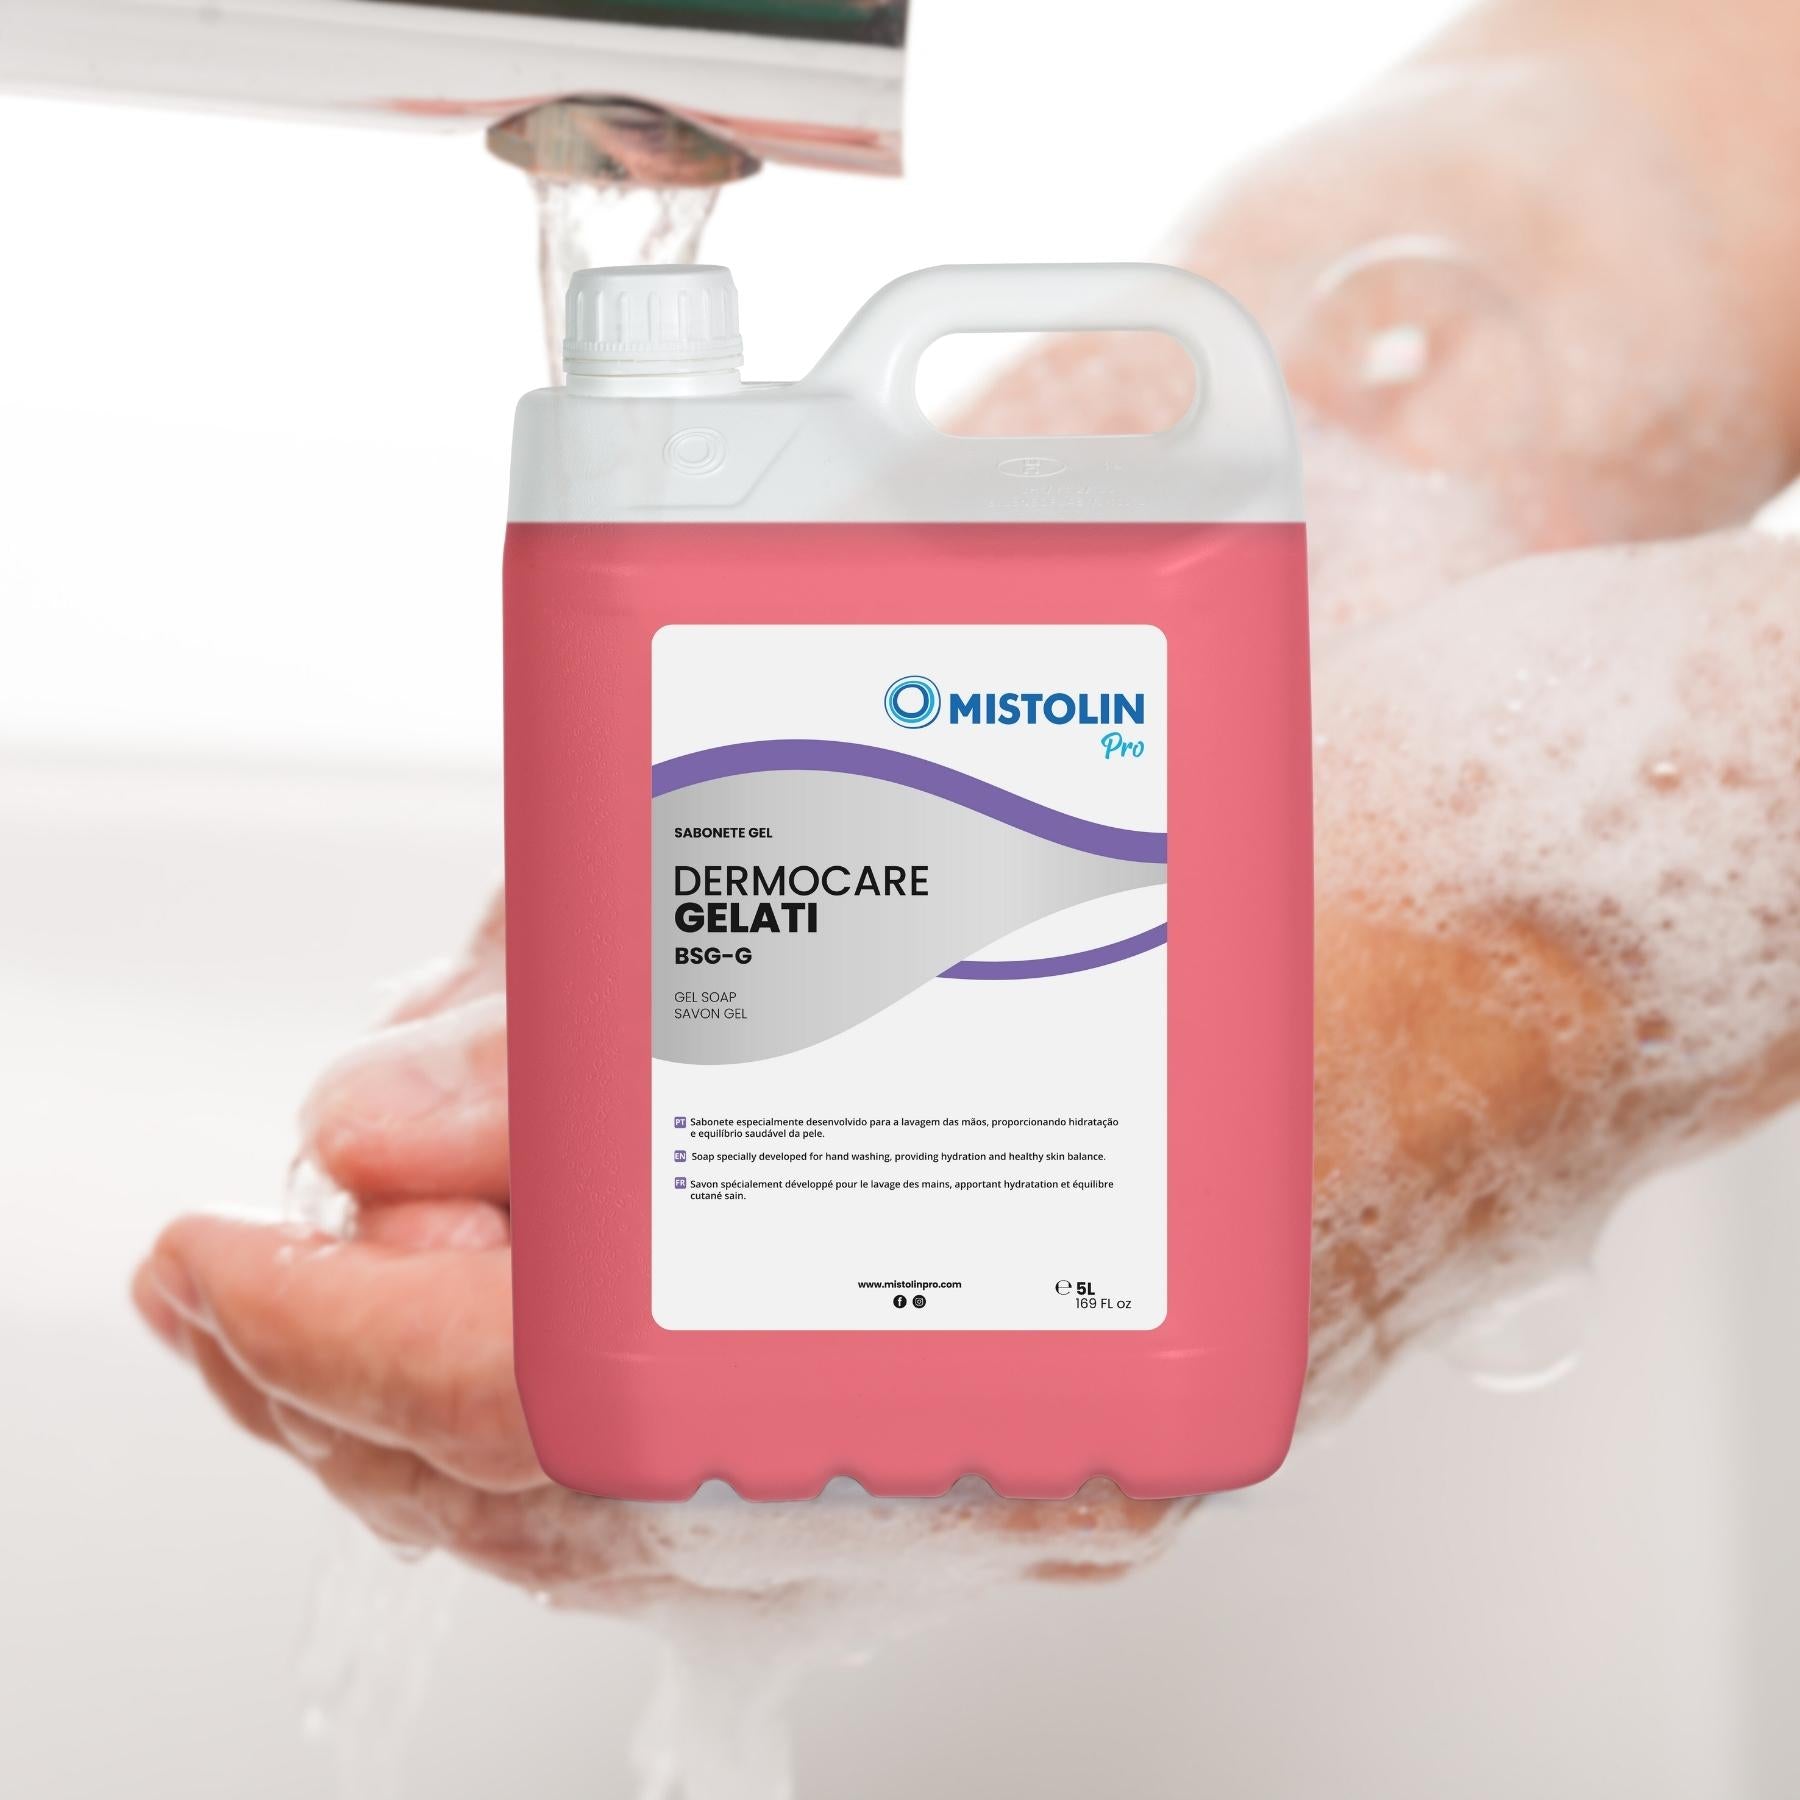 DERMOCARE GELATI BSG-G SABONETE GEL 5LT, é um sabonete especialmente desenvolvido para a lavagem das mãos, proporcionando hidratação e equilíbrio saudável da pele.